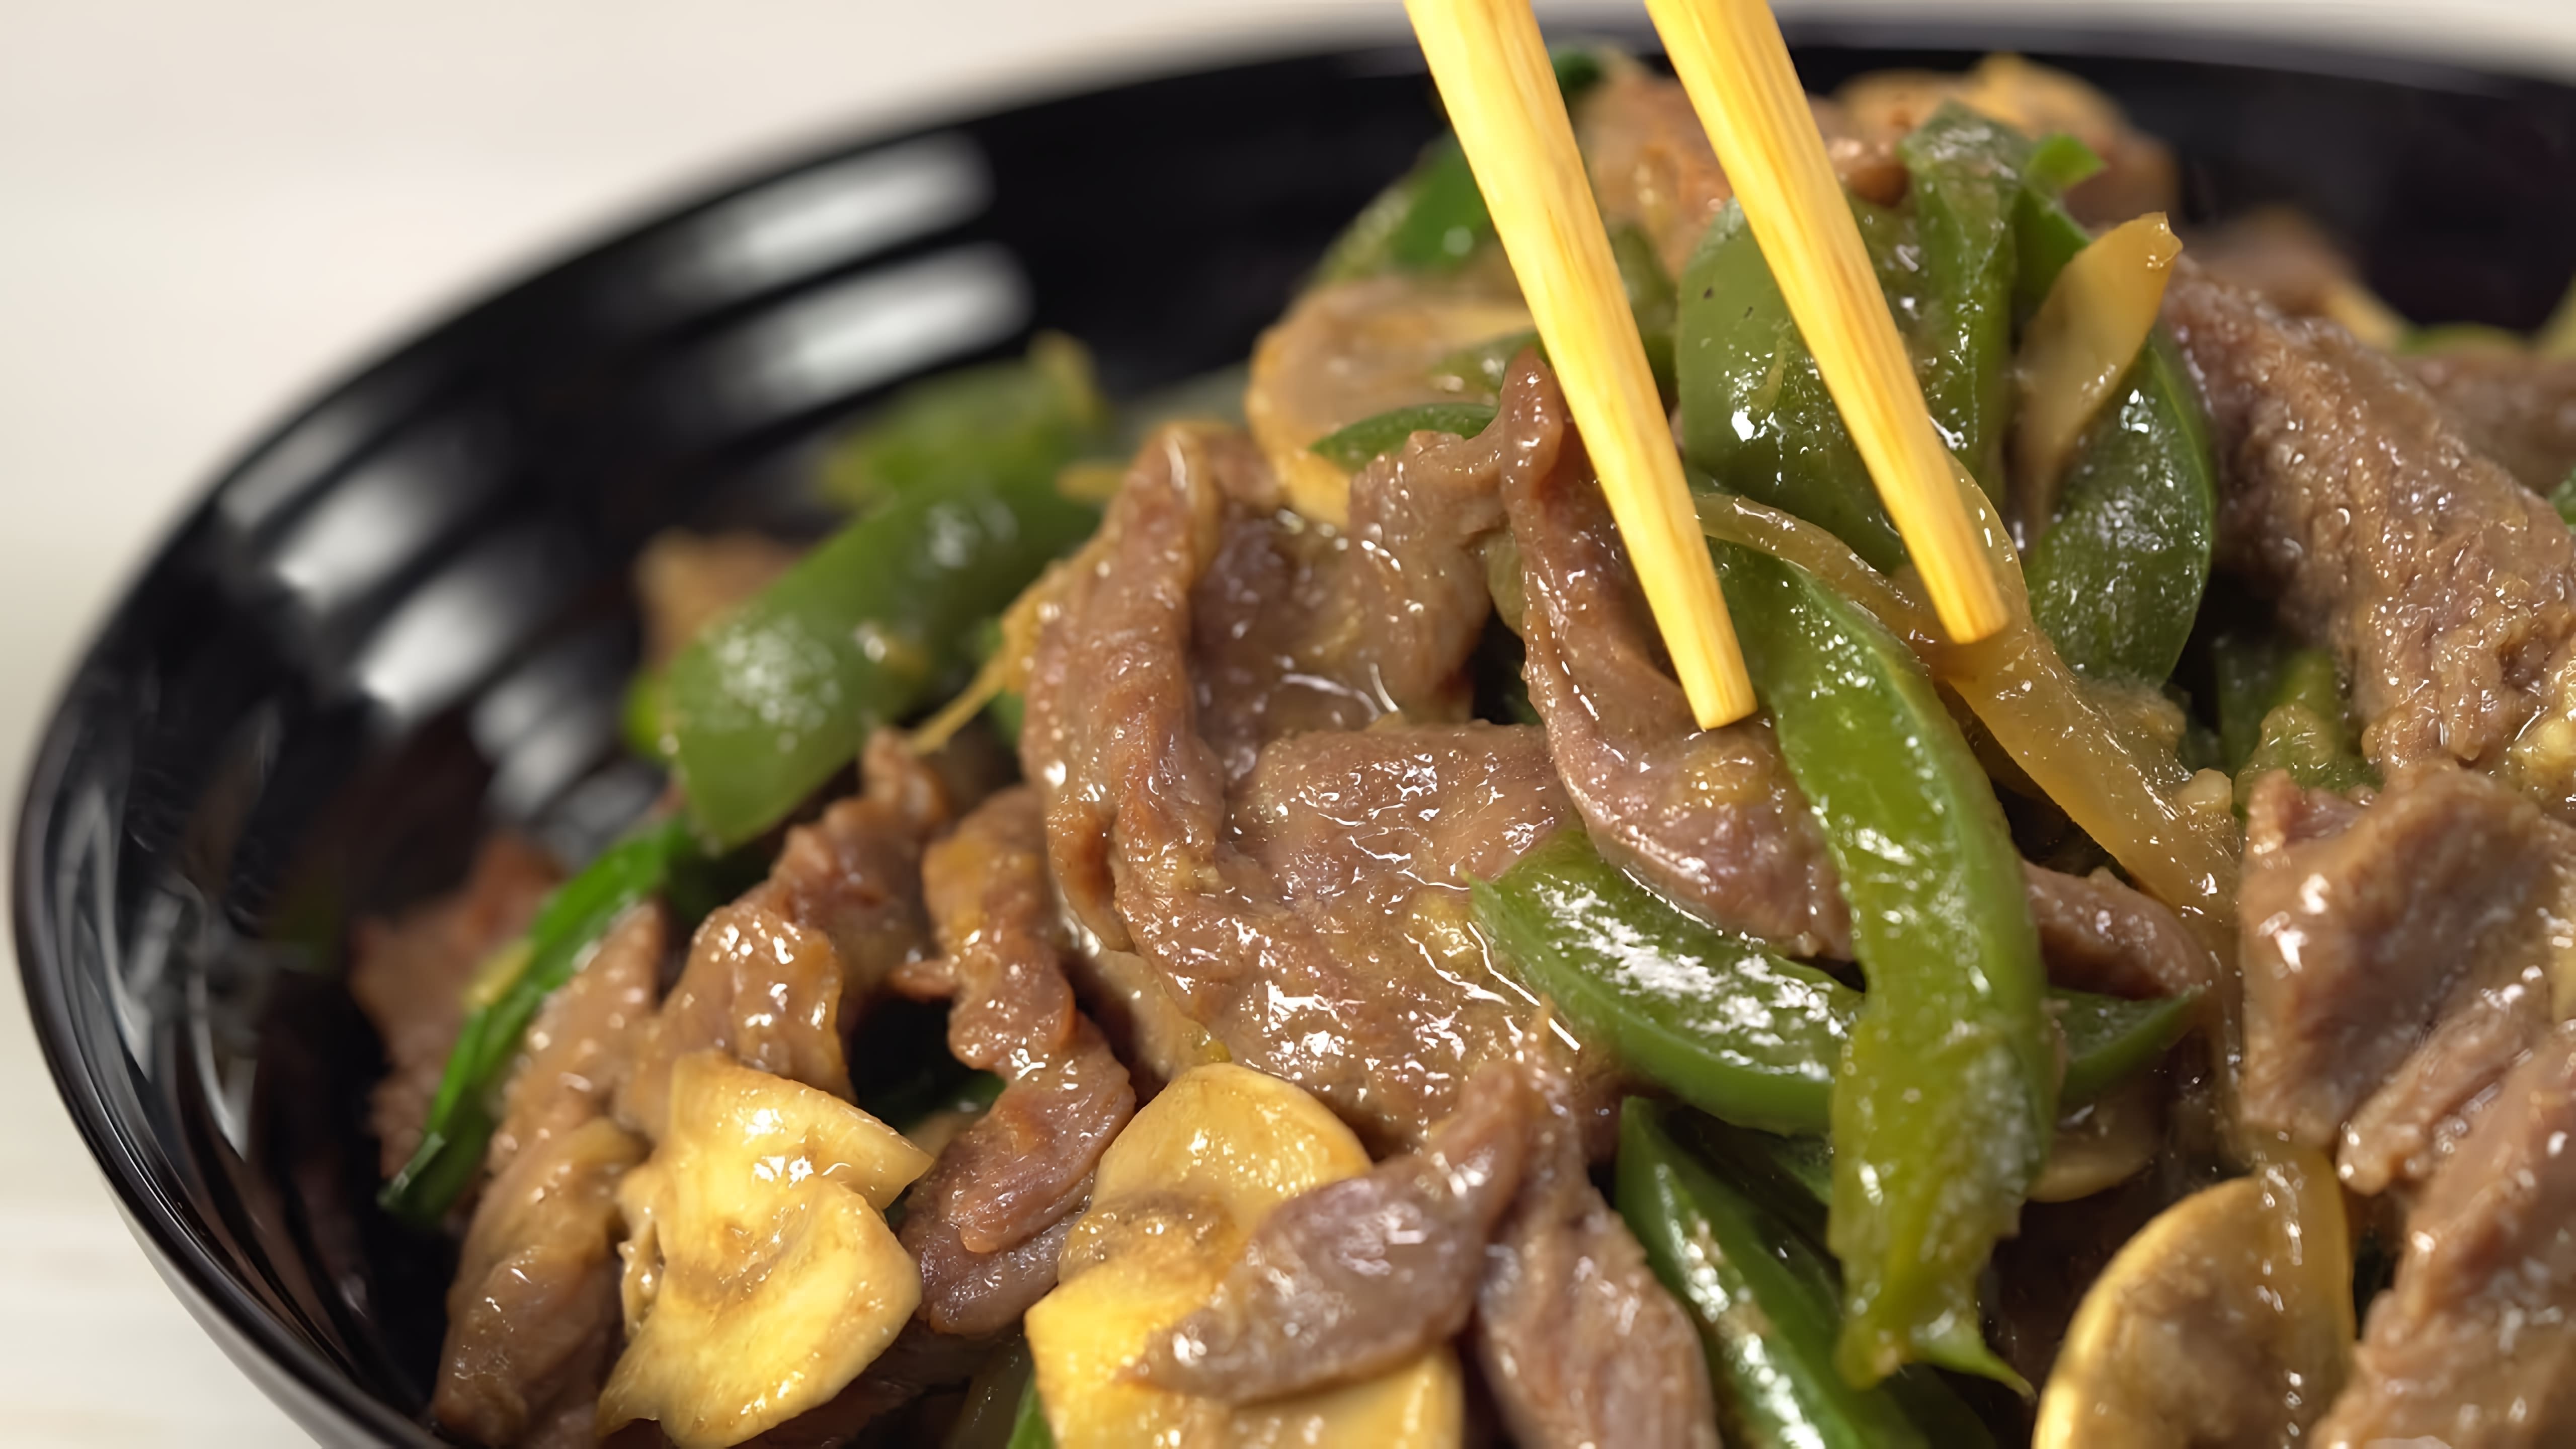 В этом видео демонстрируется рецепт приготовления жареной говядины с грибами в азиатском стиле